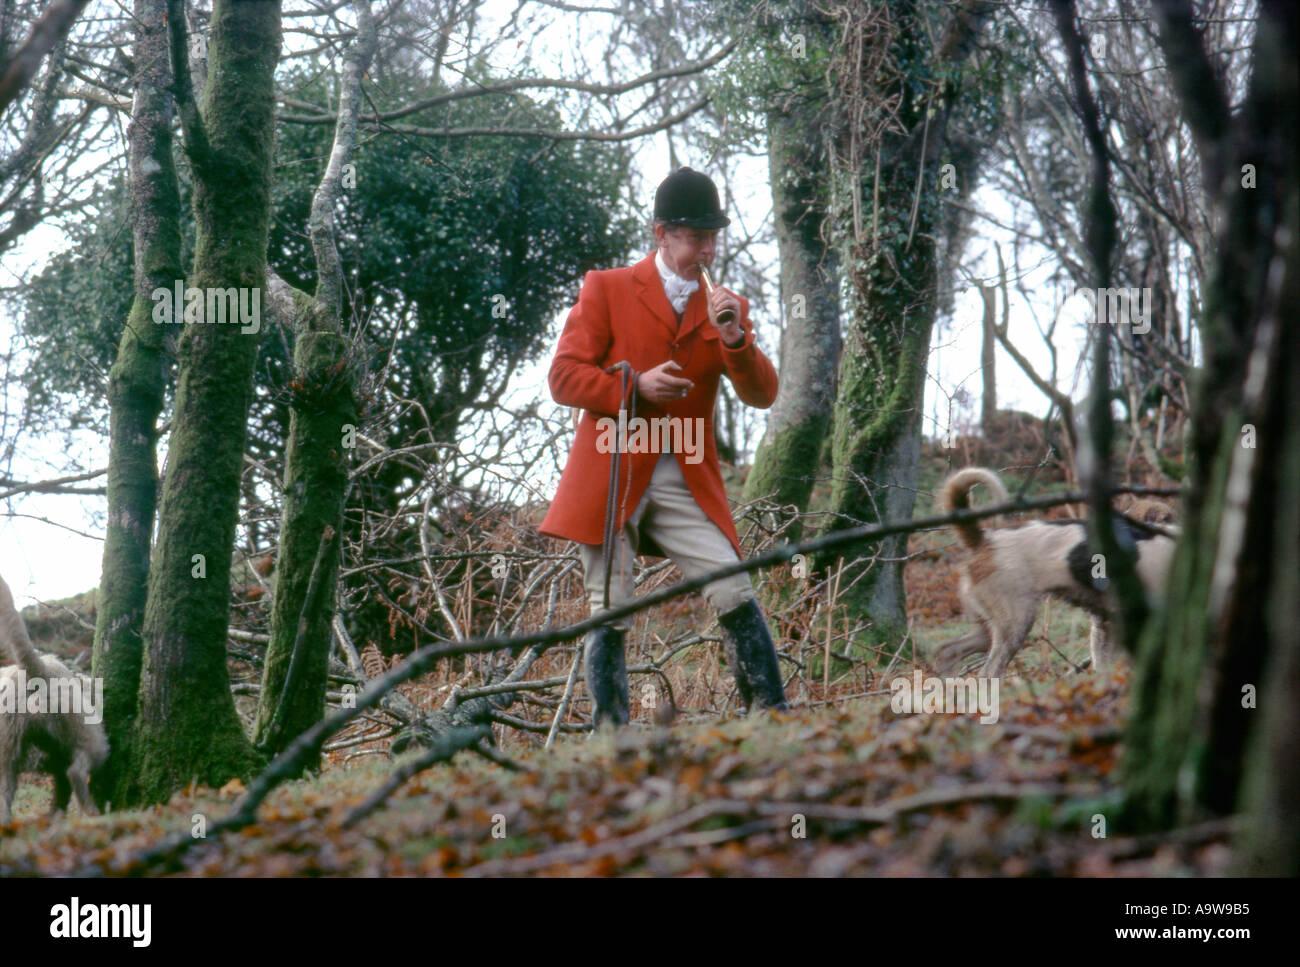 La chasse à courre Fox homme porte manteau rouge dans les bois corne laiton soufflage Carmarthenshire, Pays de Galles, Royaume-Uni Banque D'Images